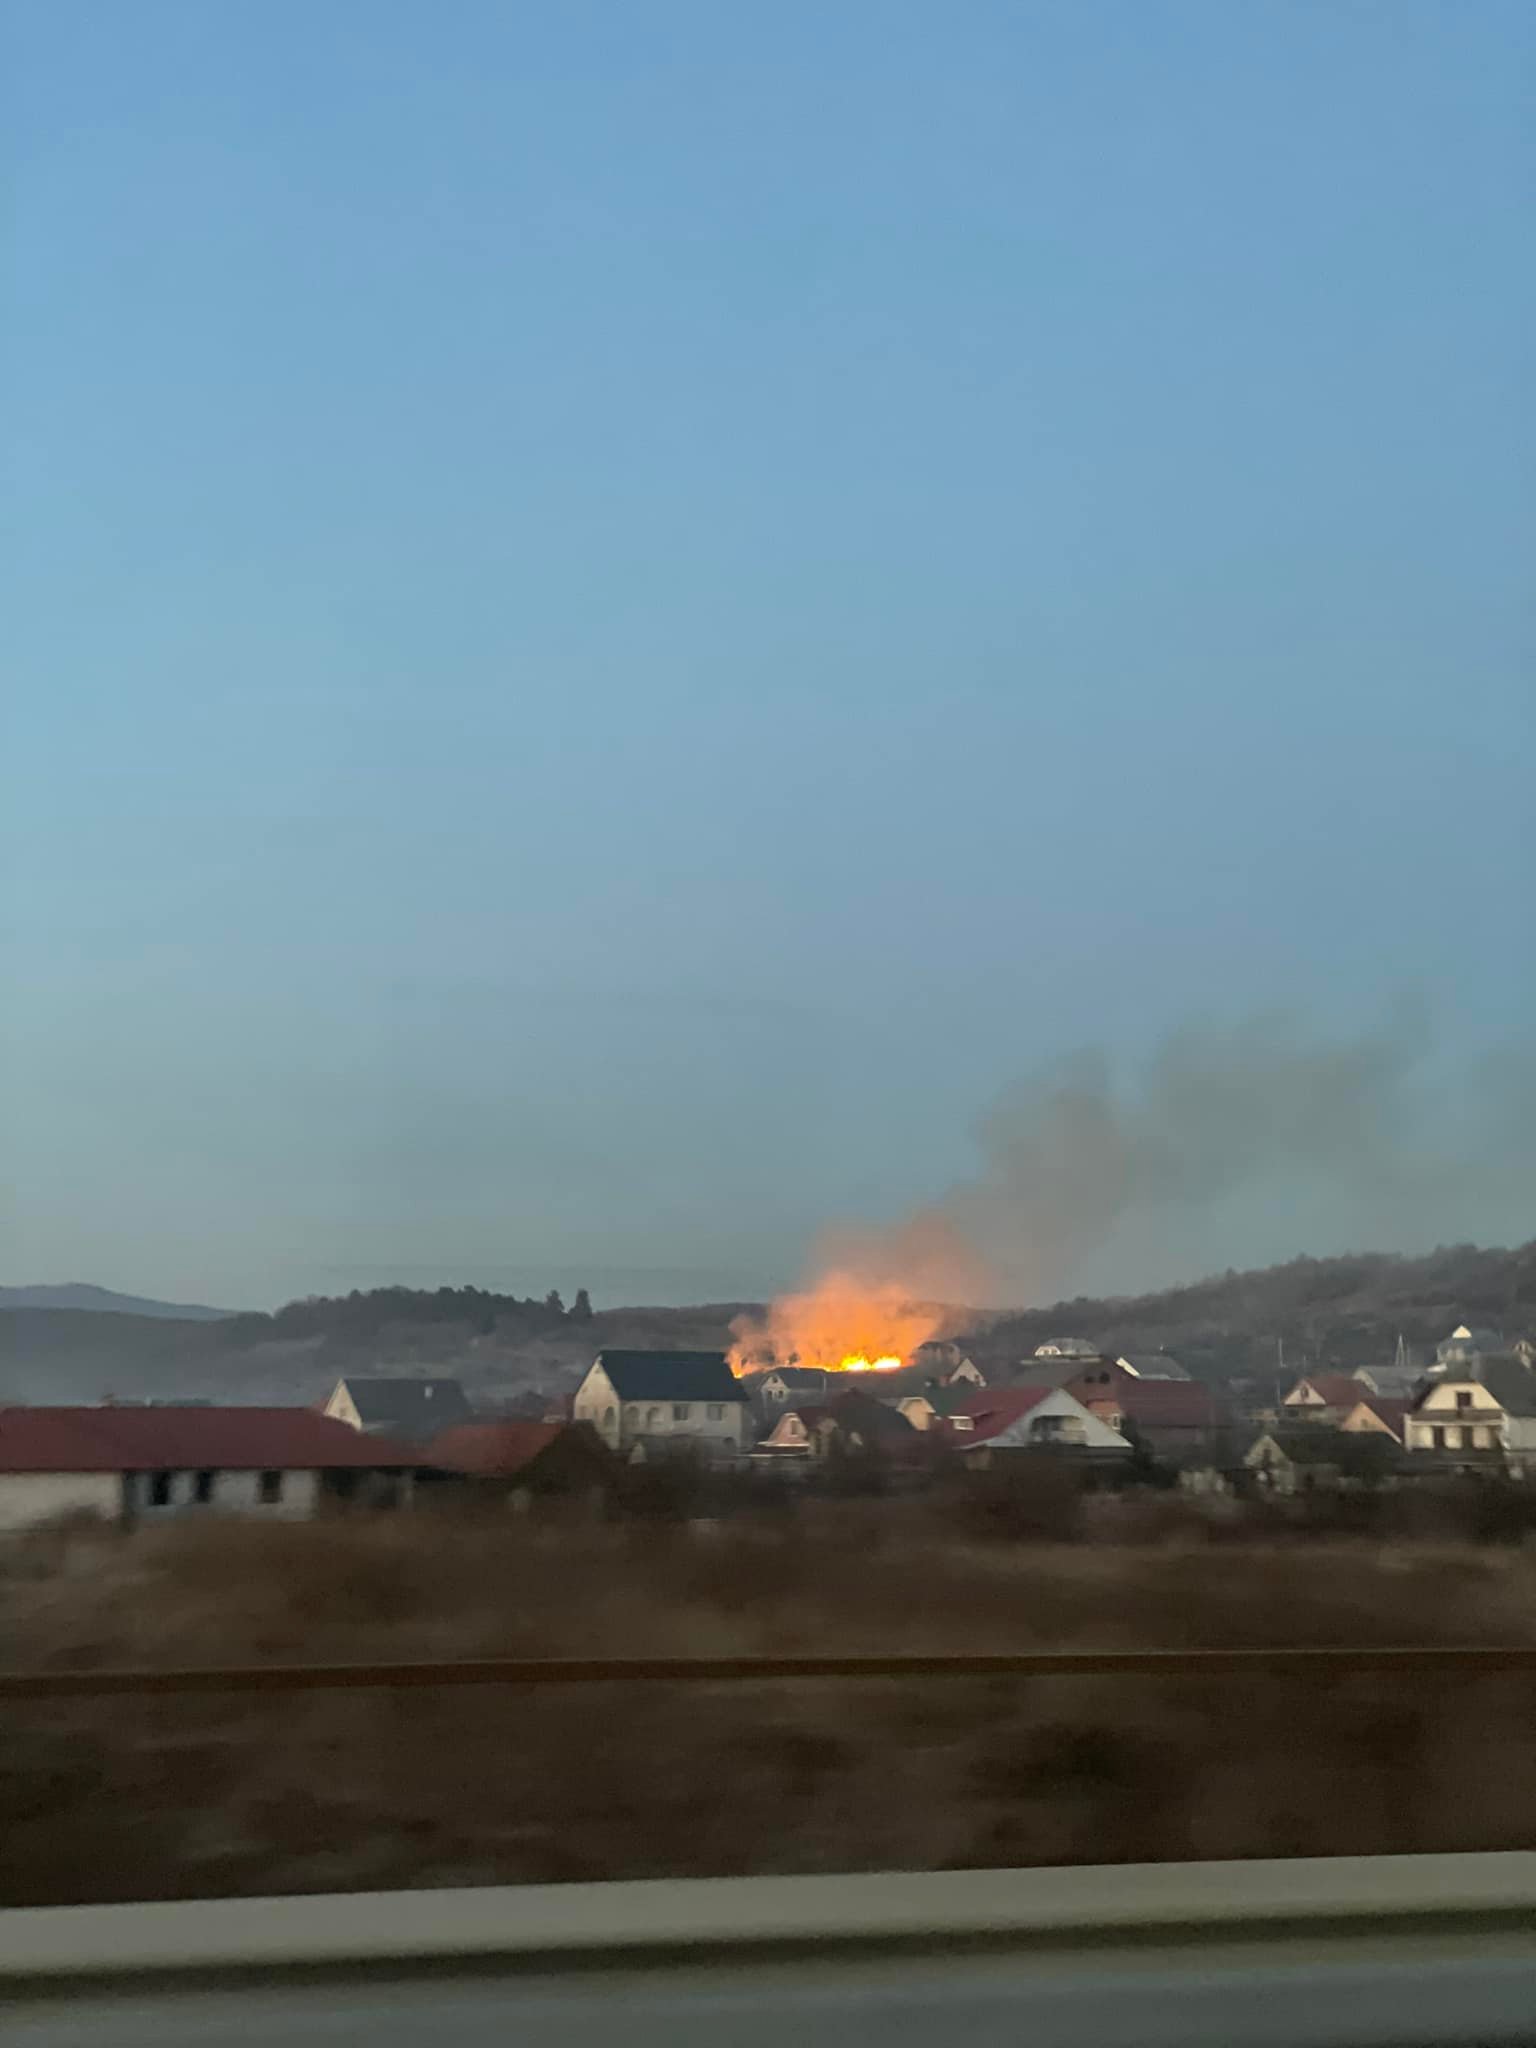 Фотографии с места пожара были распространены в Интернете.